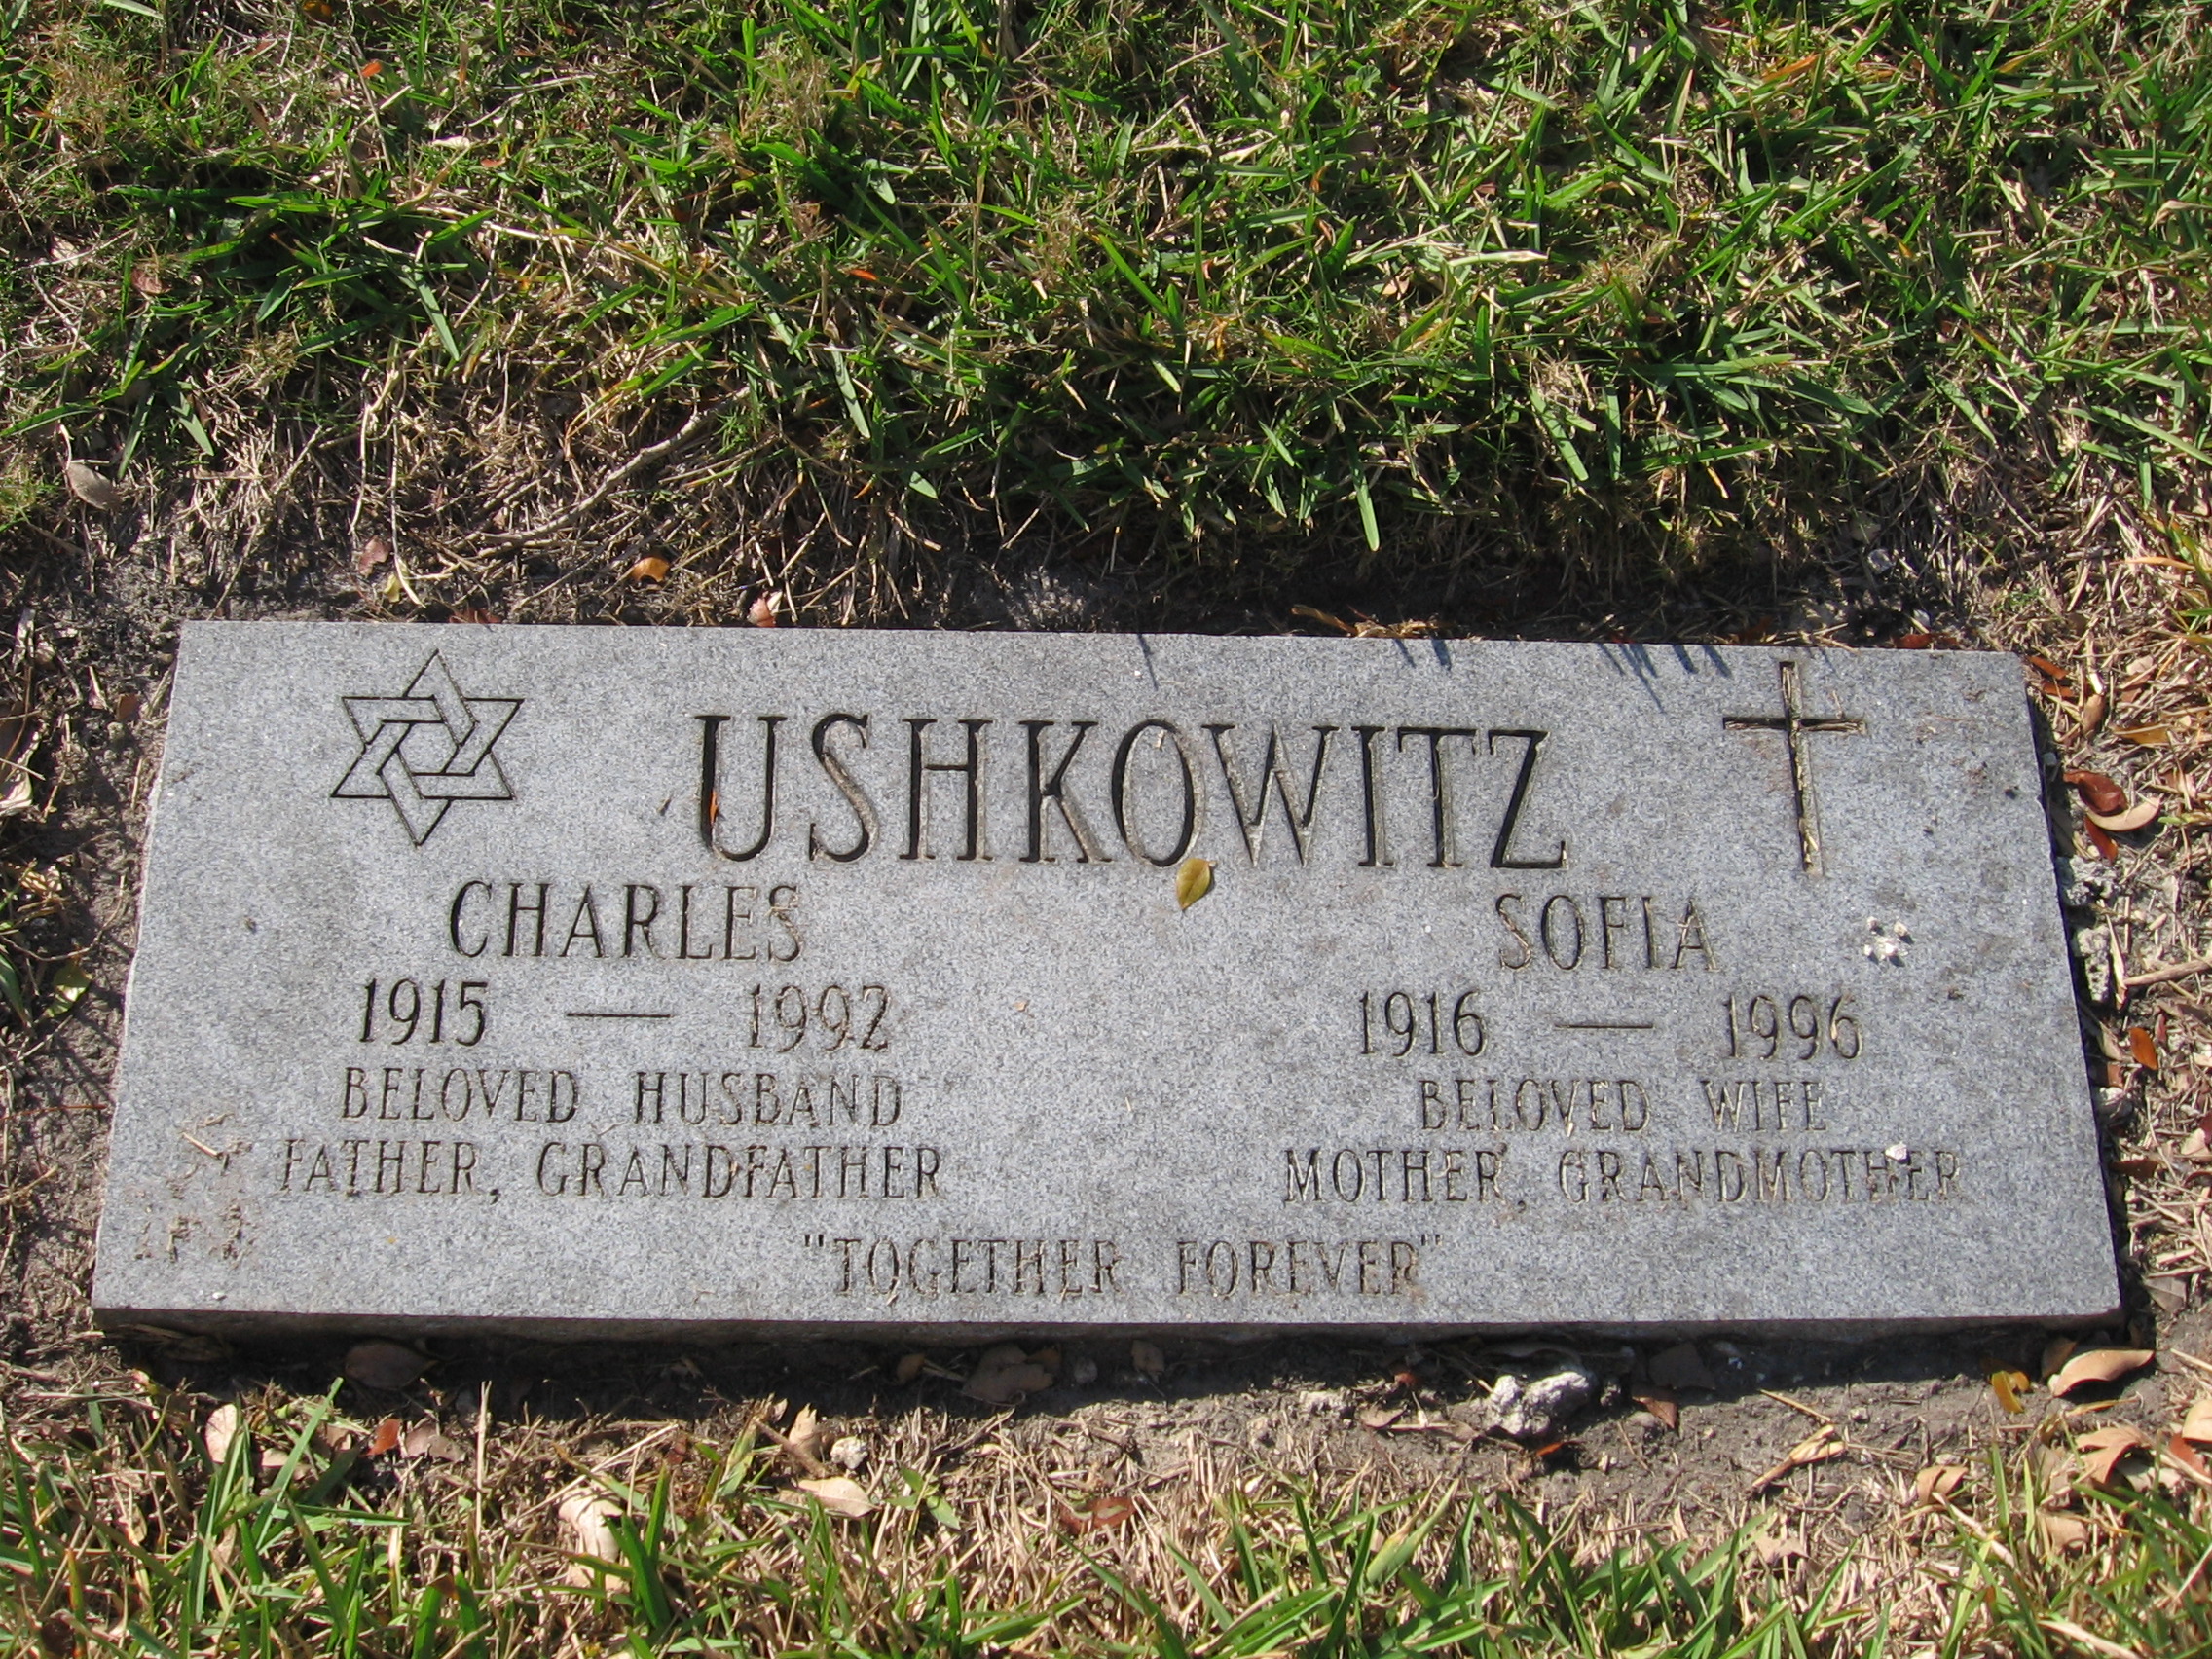 Charles Ushkowitz